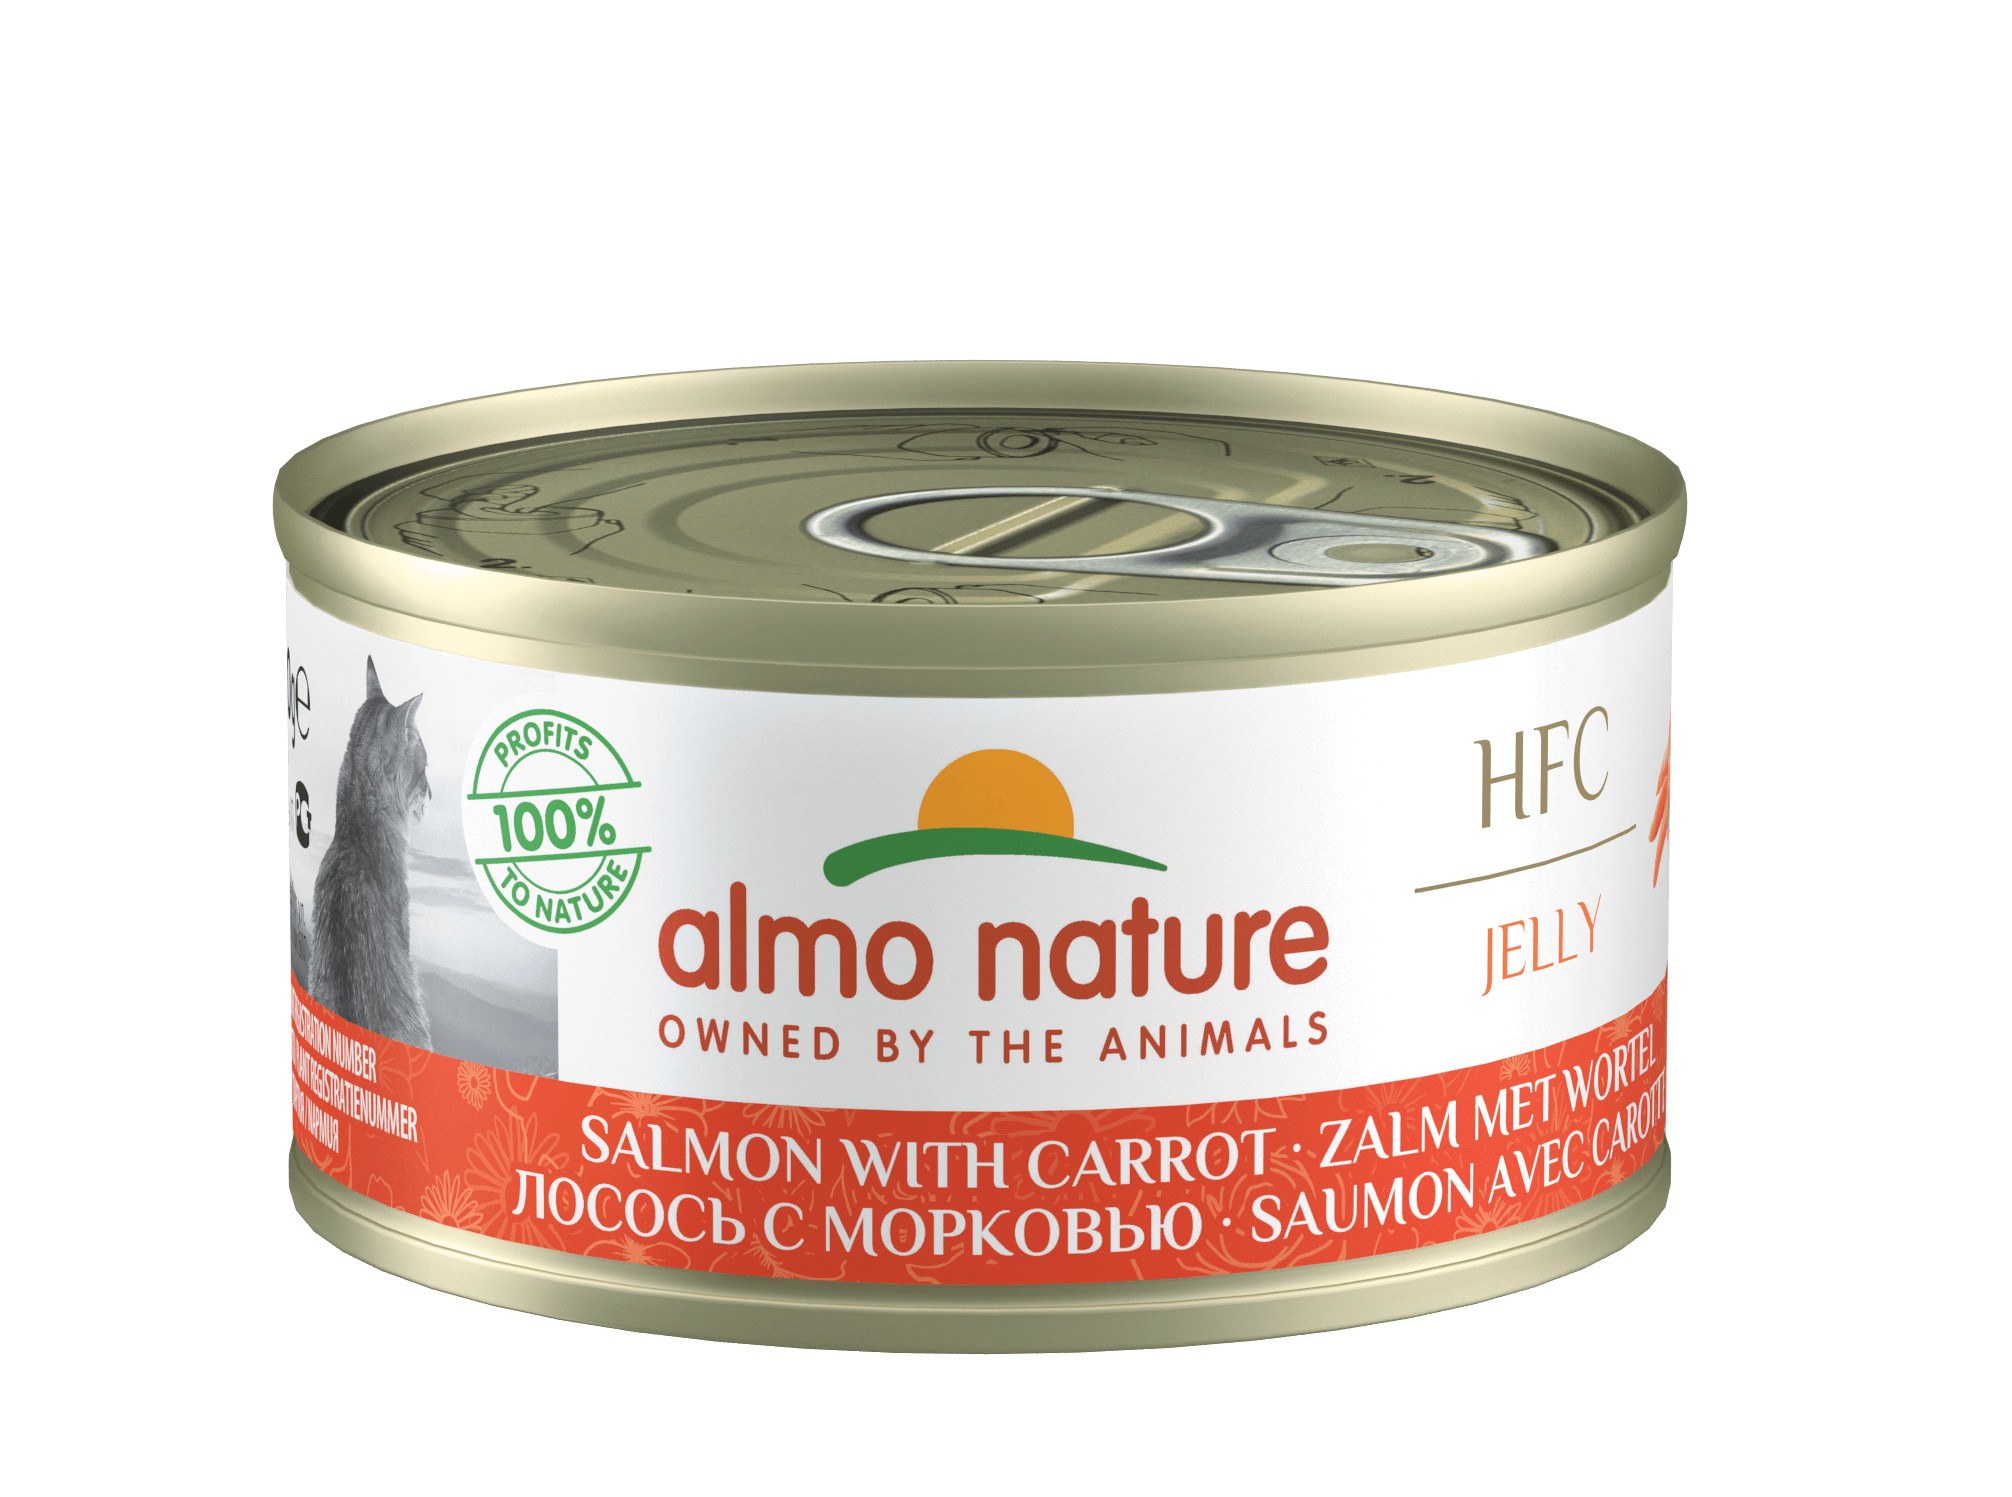 Almo Nature HFC Jelly laks med gulerødder kattefoder